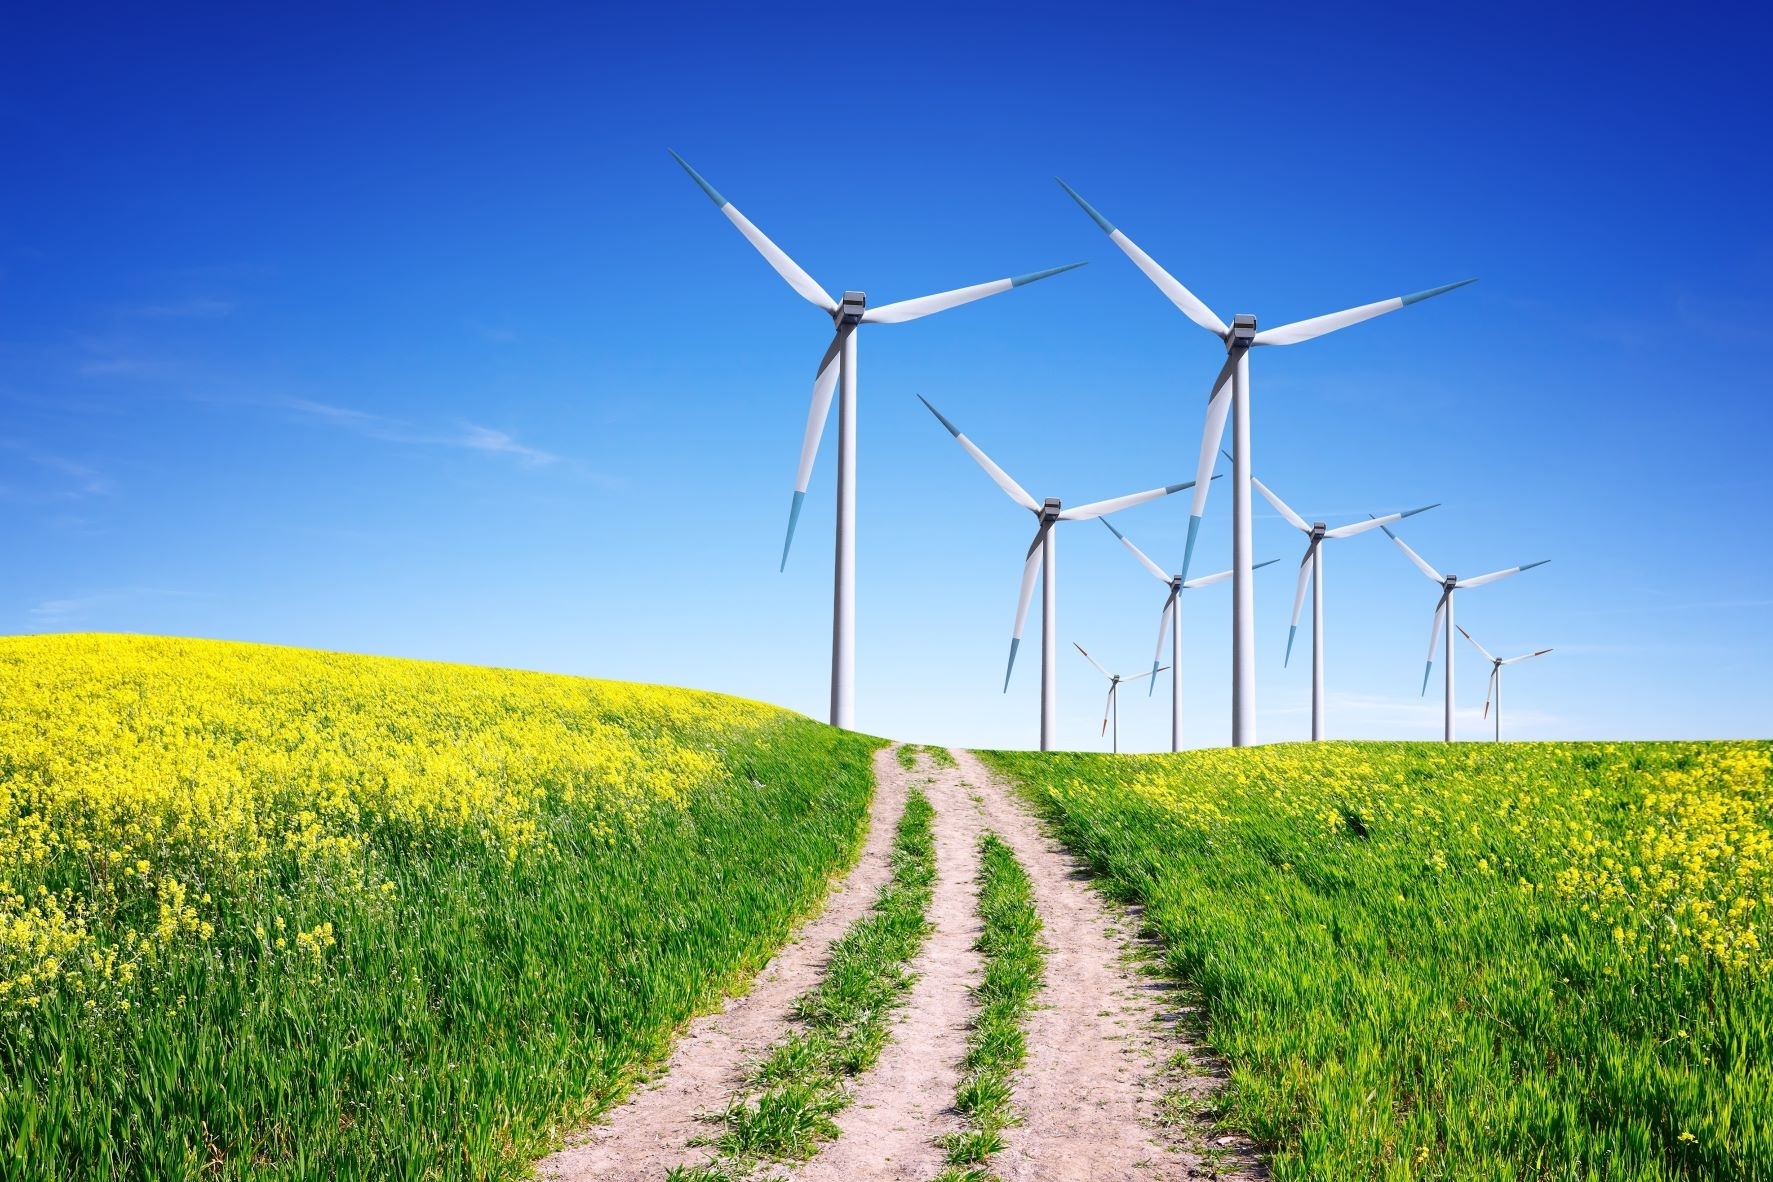 Akmenės vėjo parkų „Windfarm Akmenė“ vystytojai planuoja plėtrą